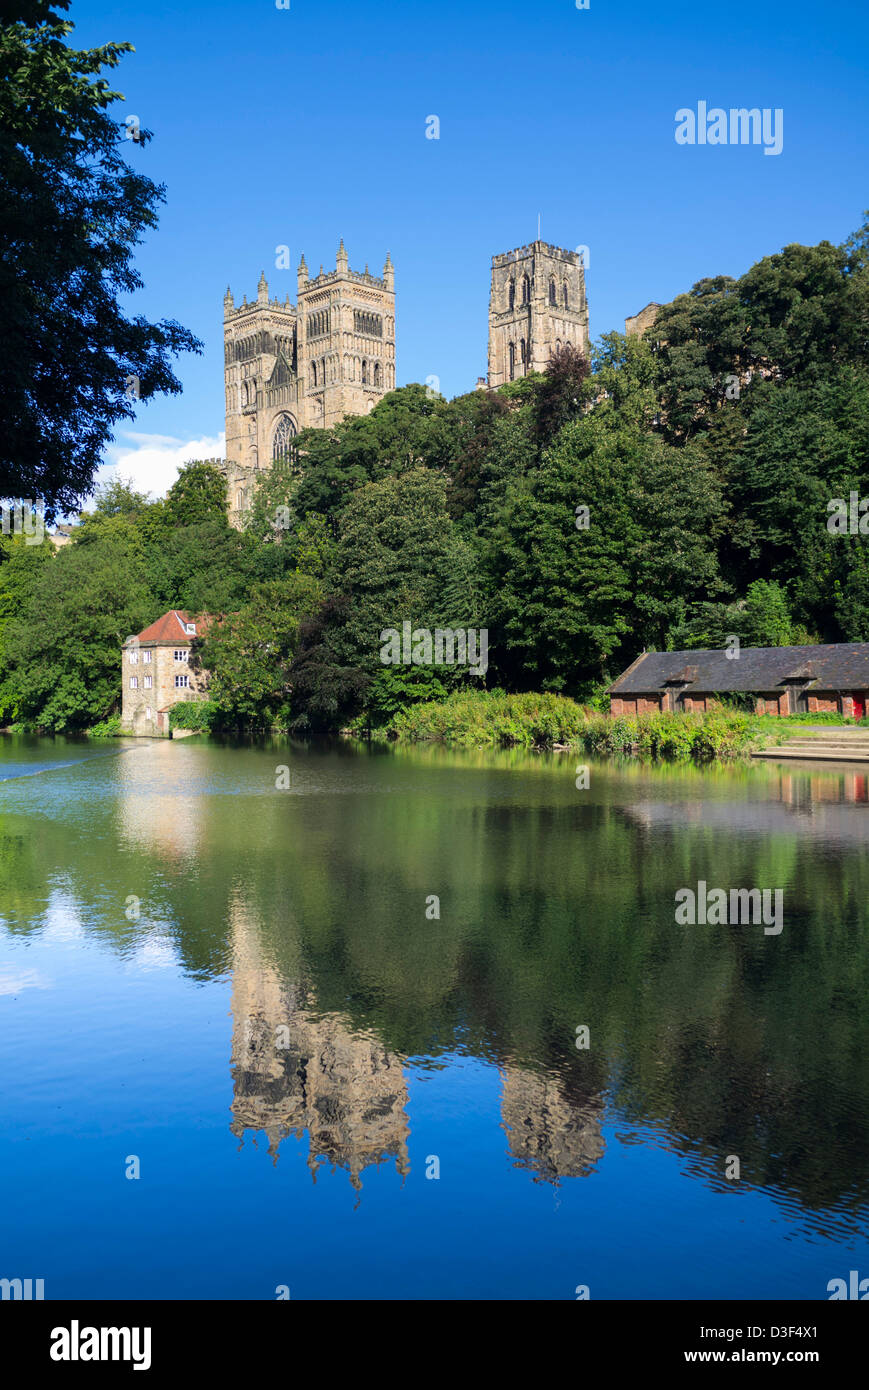 Cathédrale de Durham et de la rivière Wear, Durham Angleterre Banque D'Images